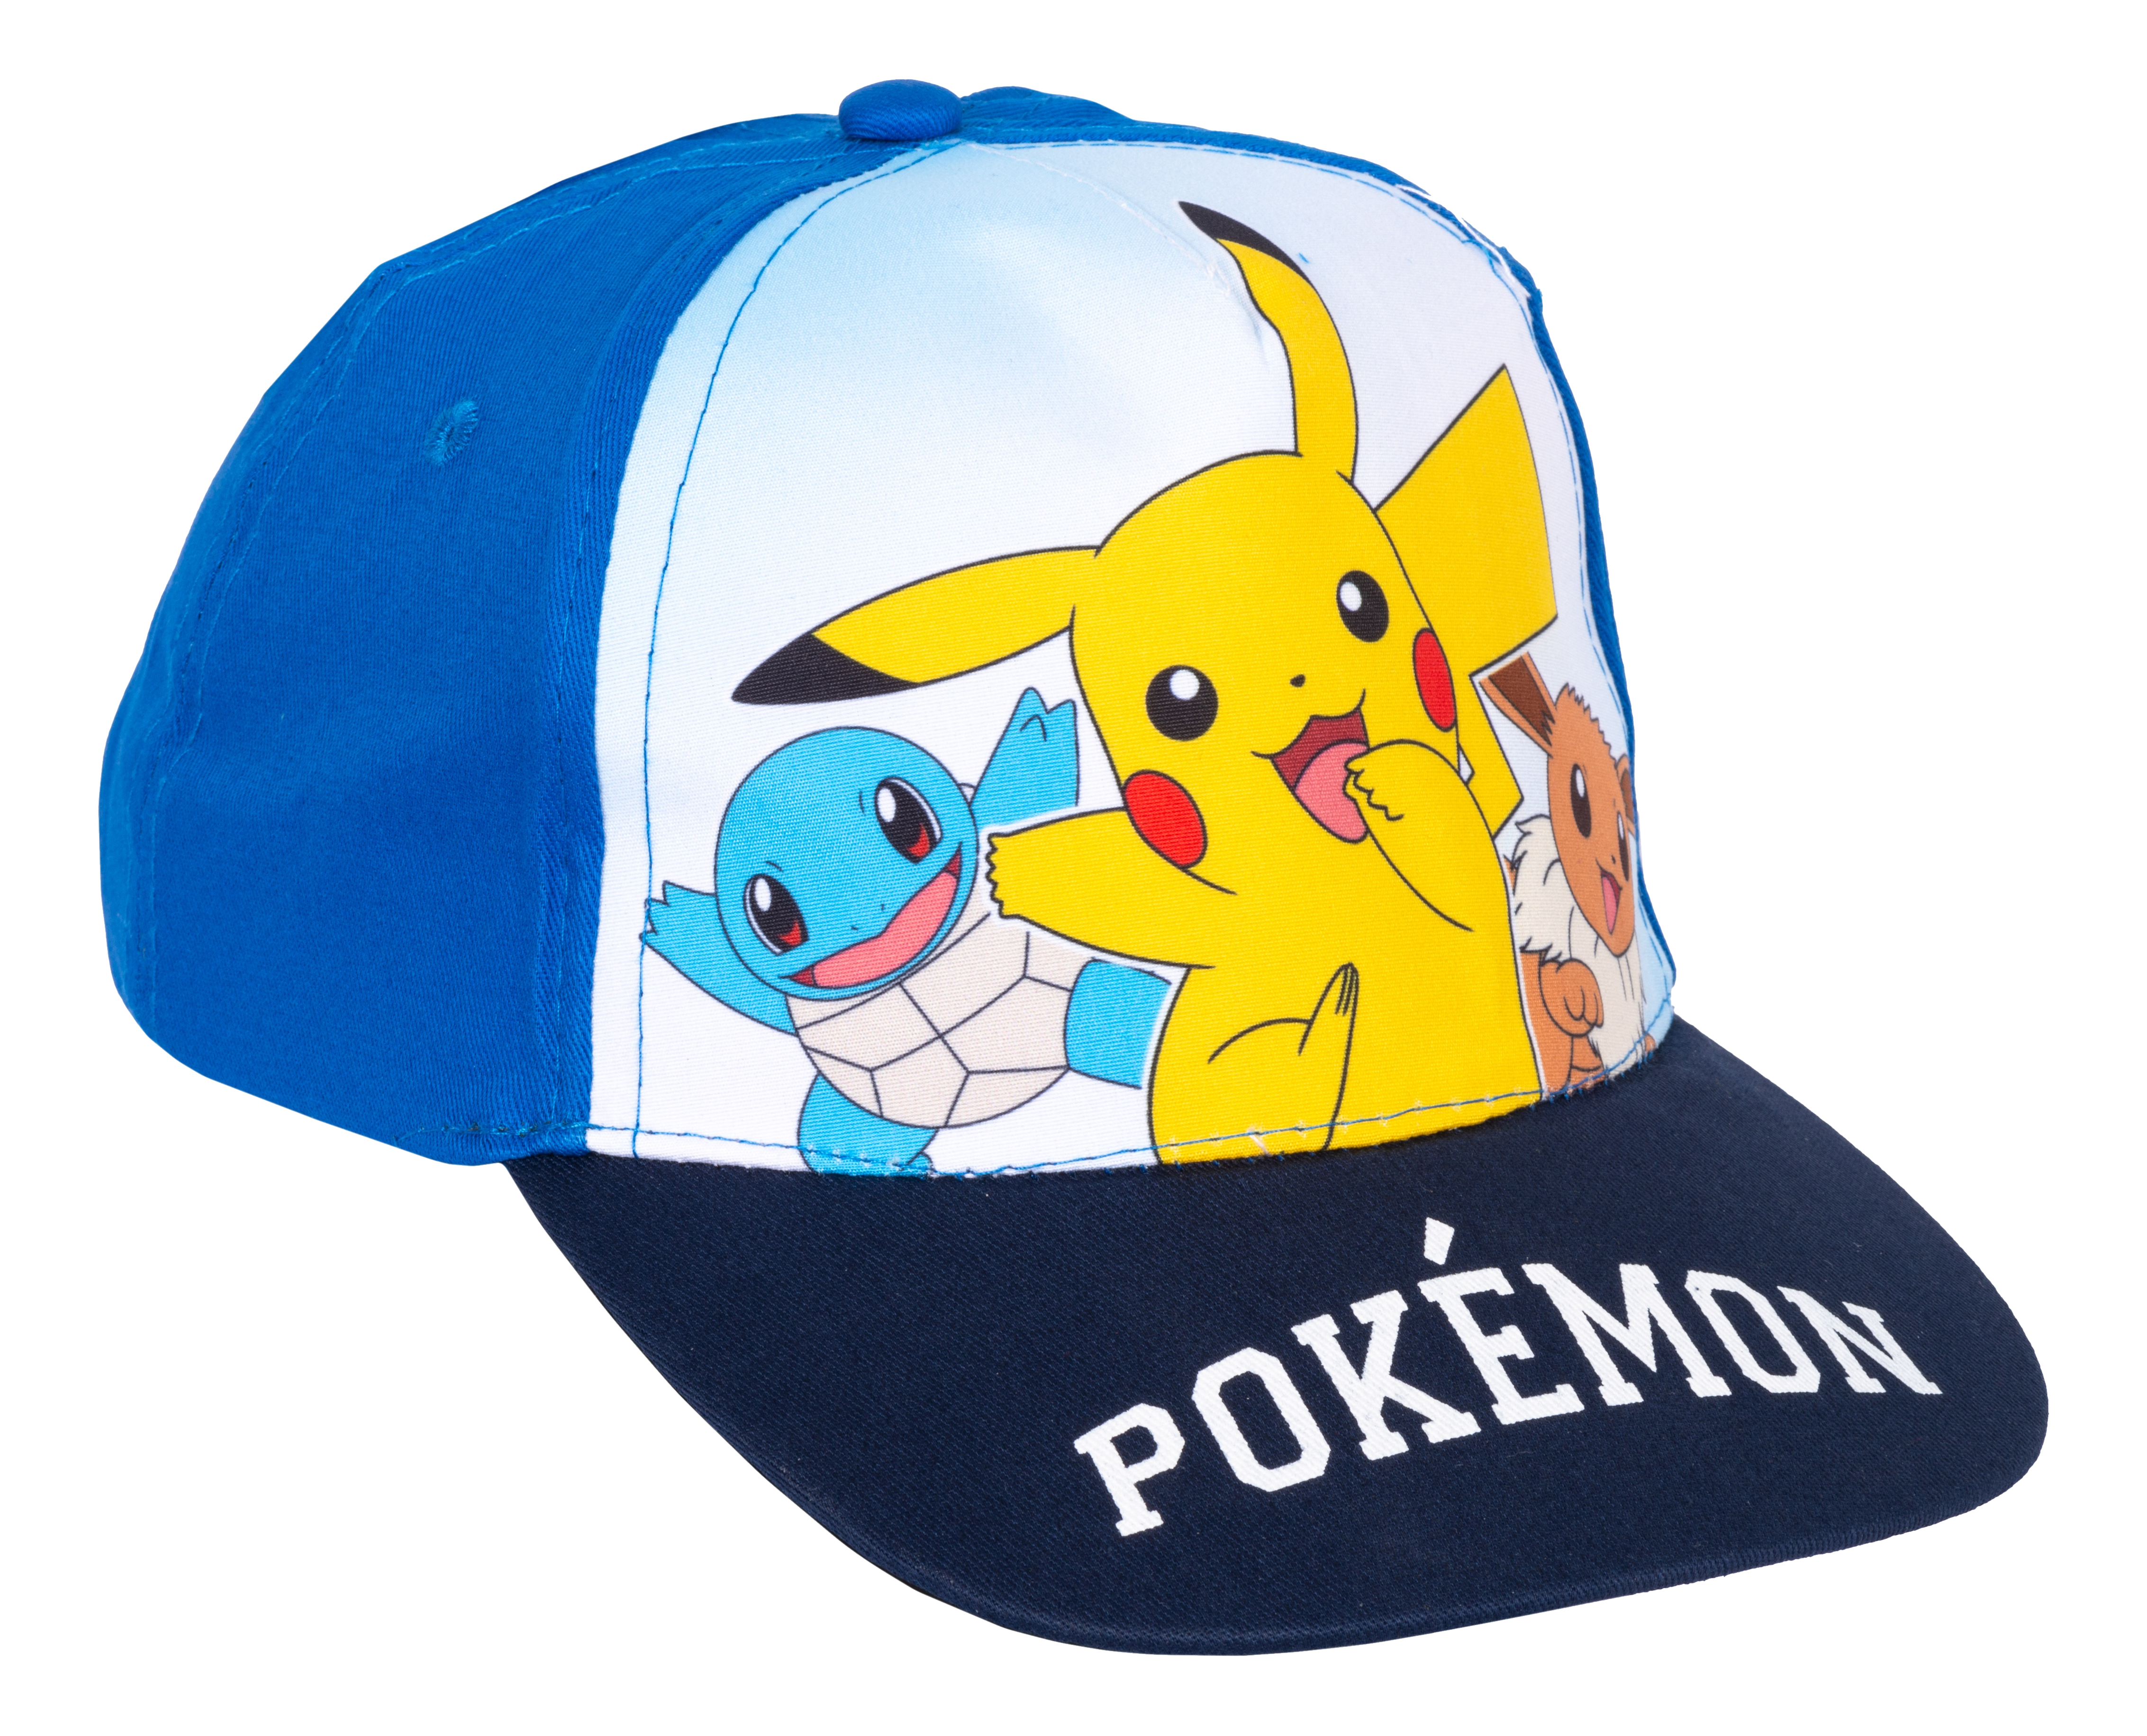 NUMSKULL Maître Pokémon - casquette (Bleu)